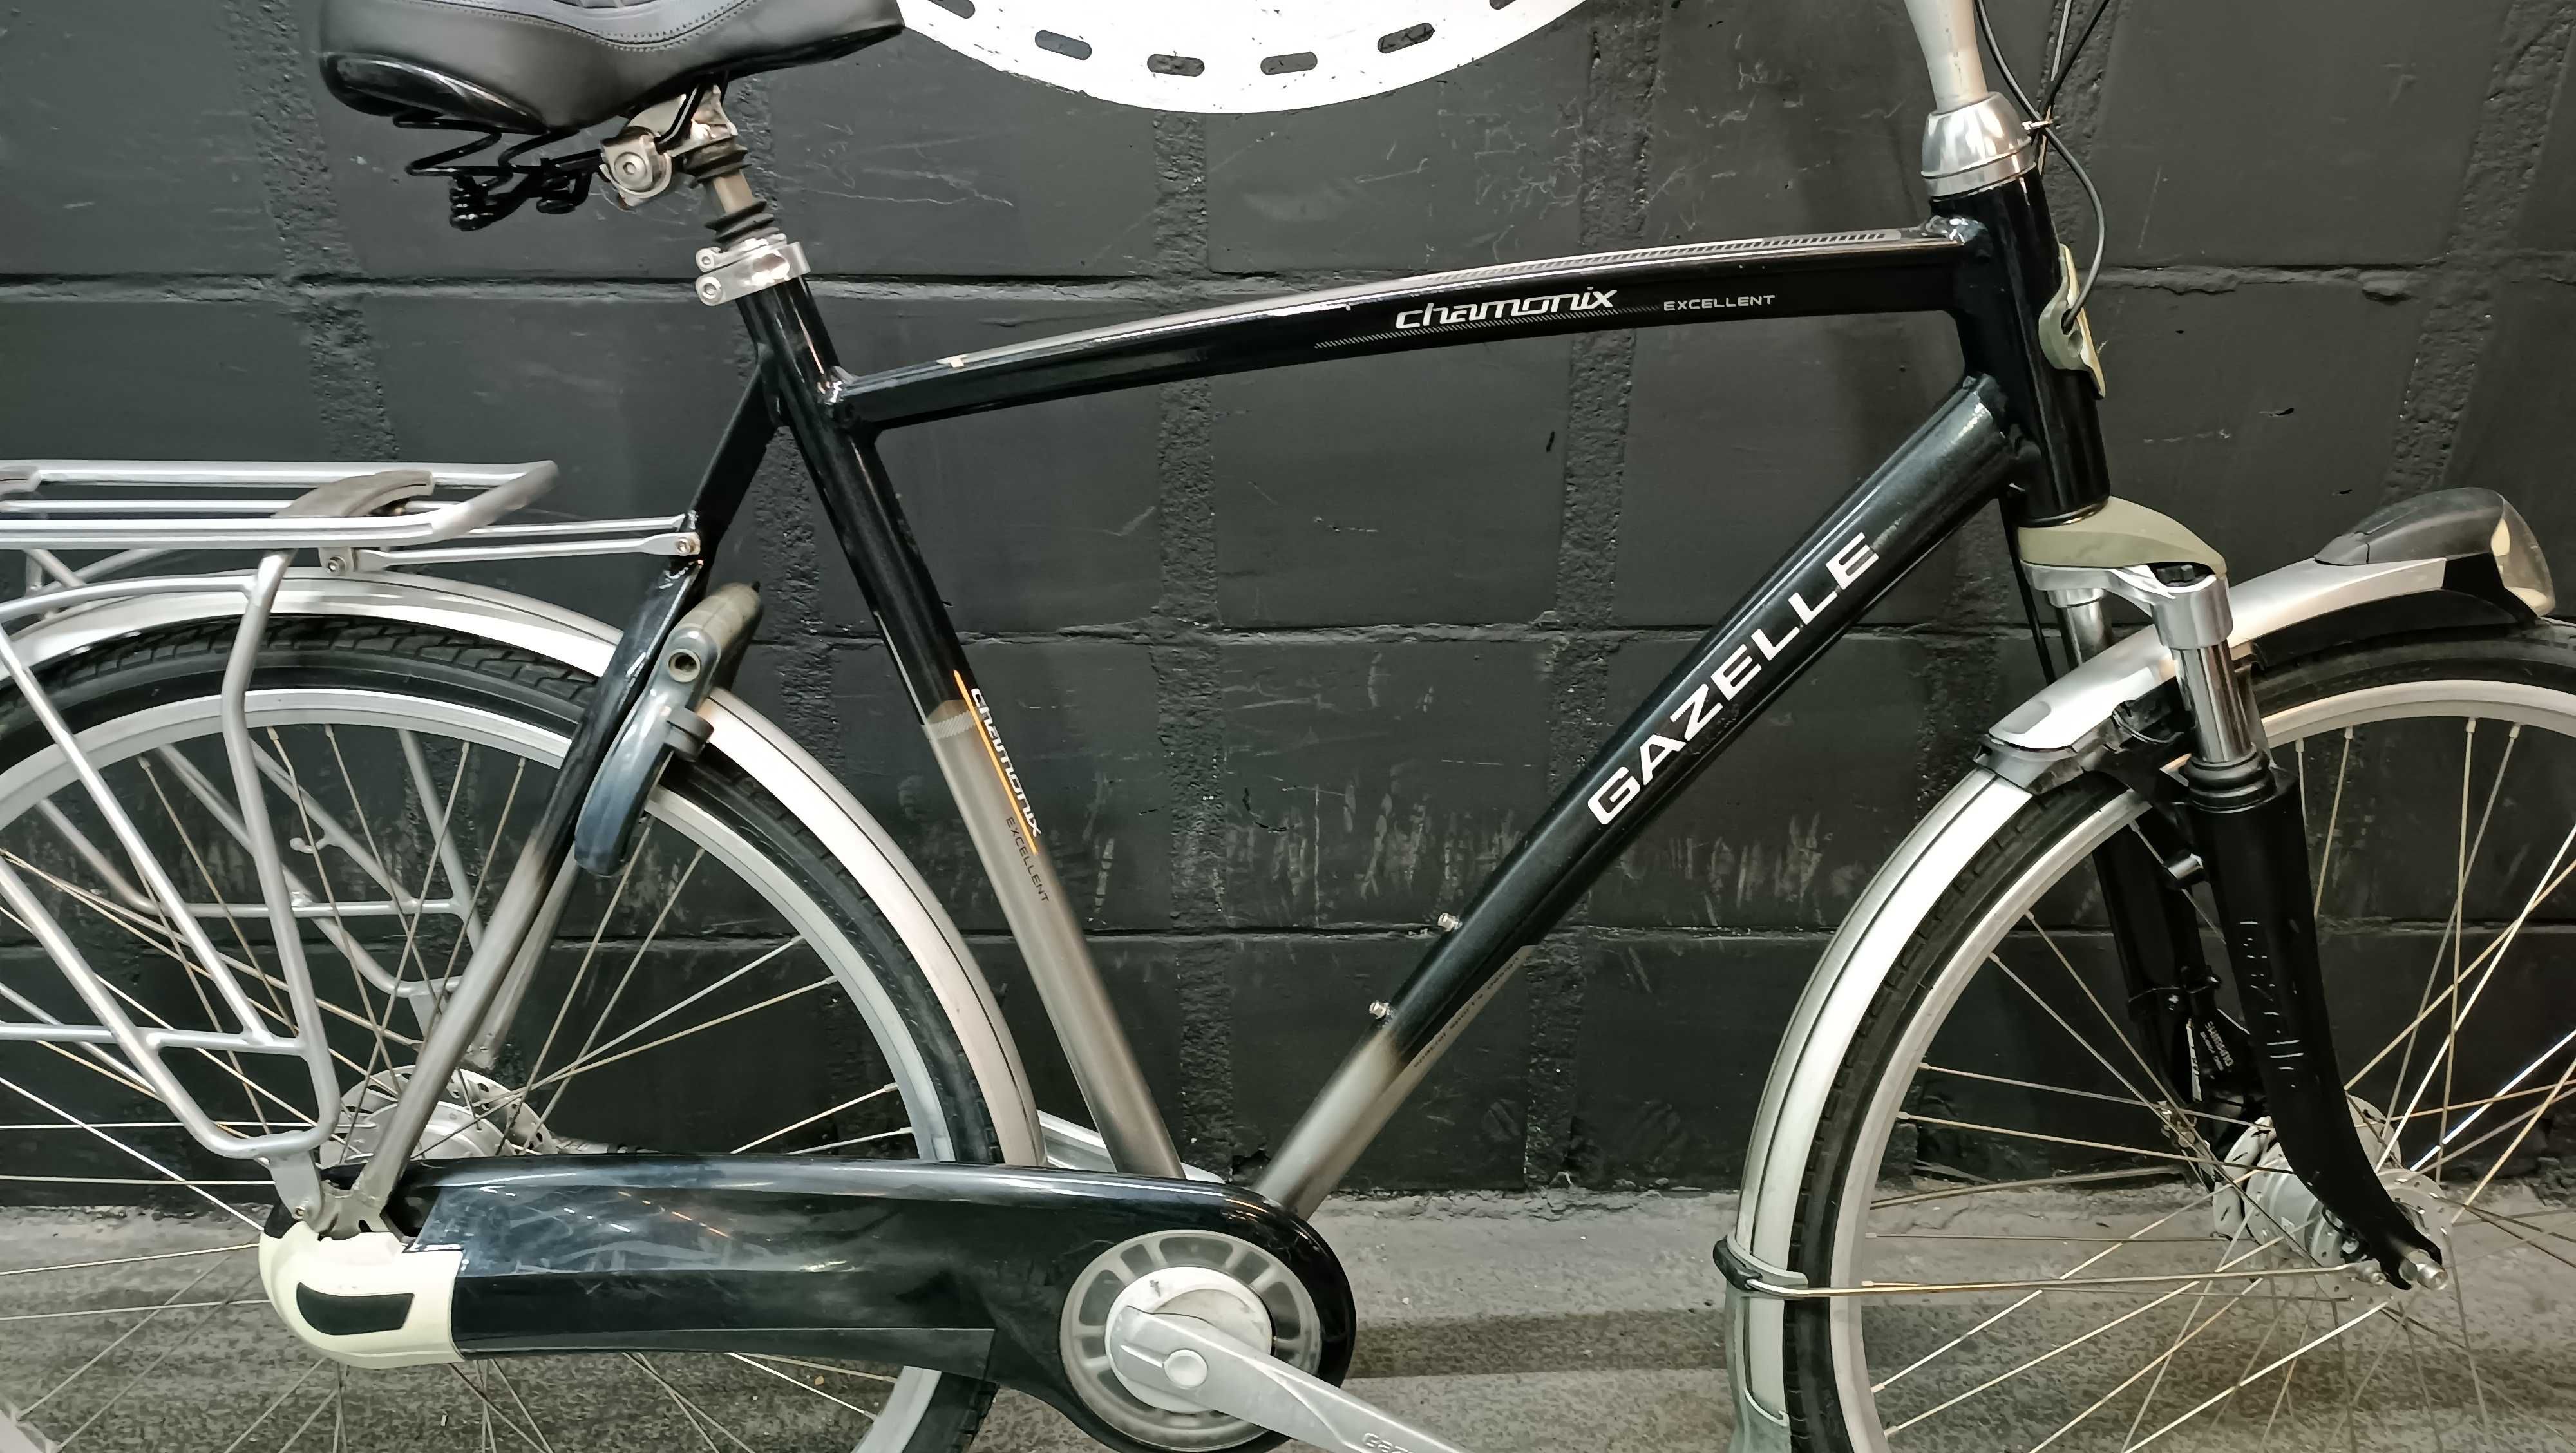 GAZELLE Chamonix męski rower miejski 61cm nexus 8 URBAN BIKES